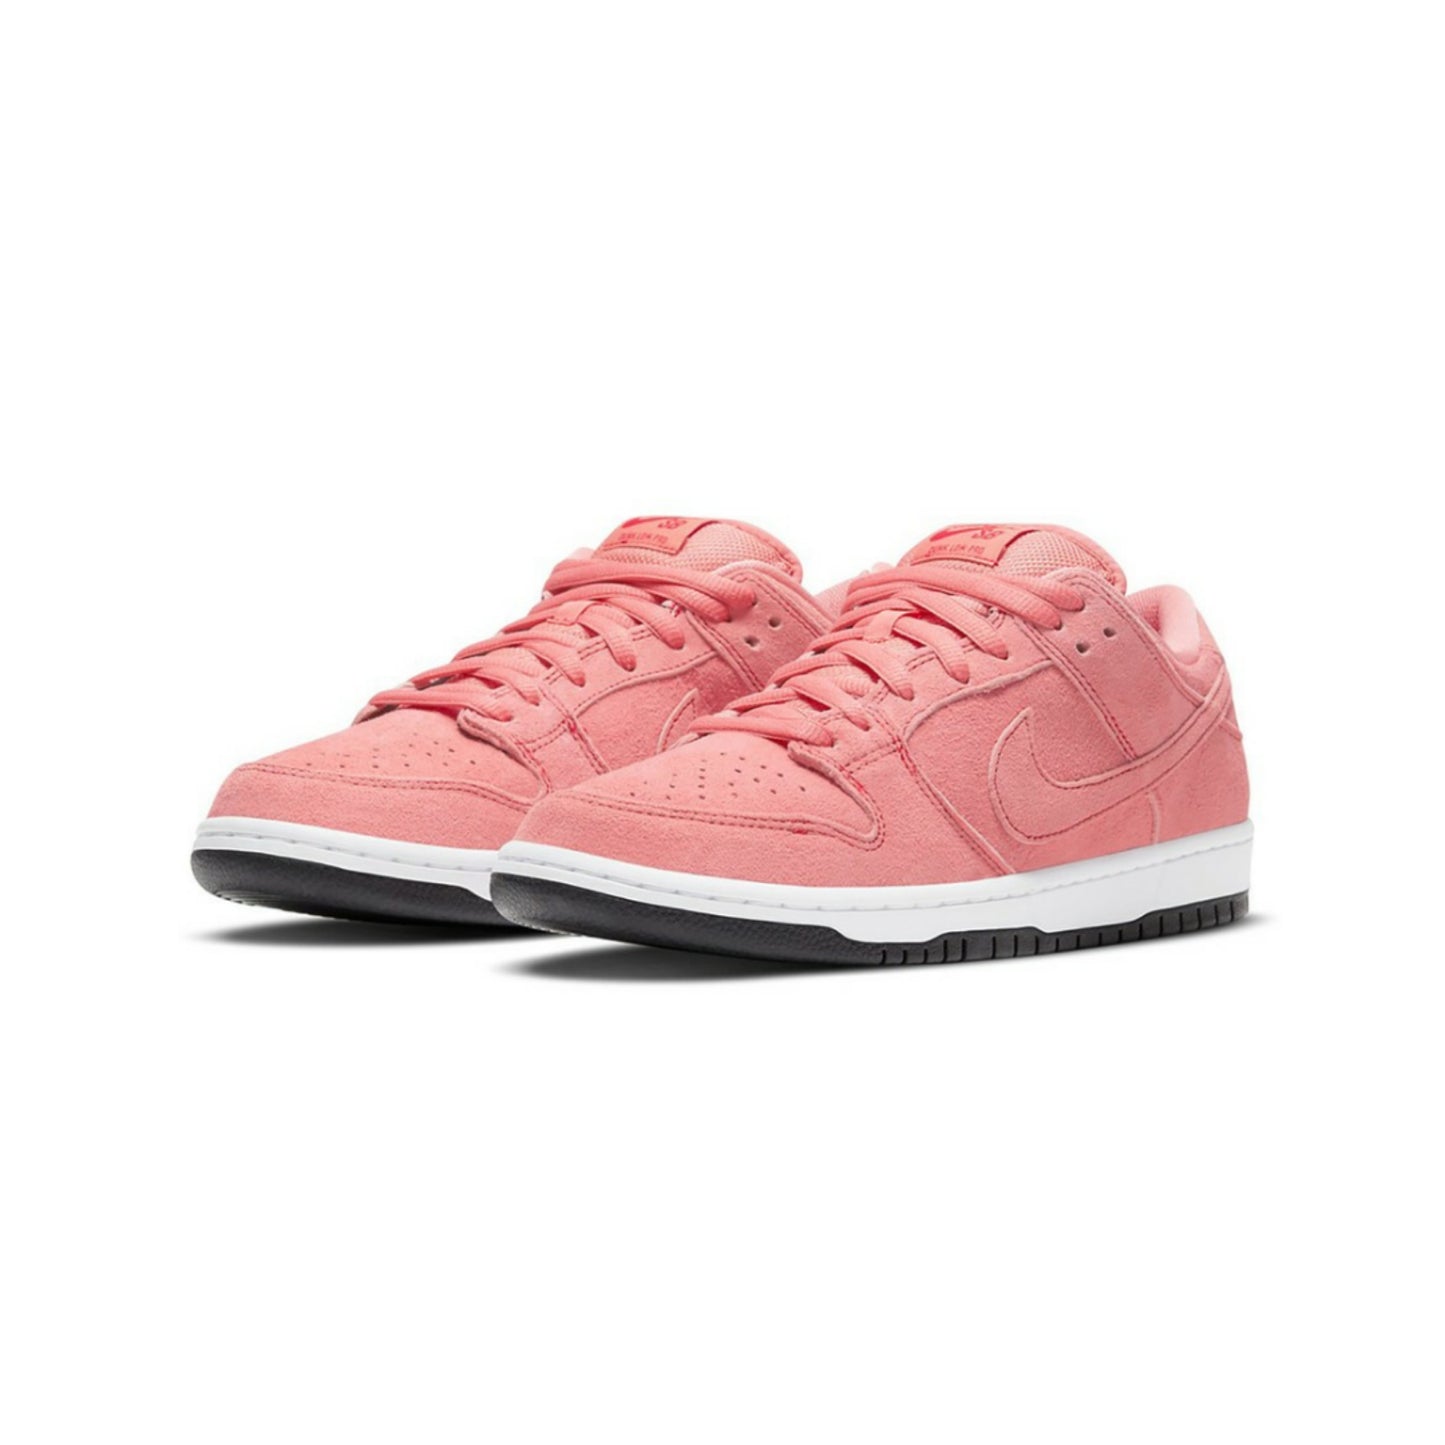 Nike SB Dunk Low Pink Pig Atomic Pink University Red White